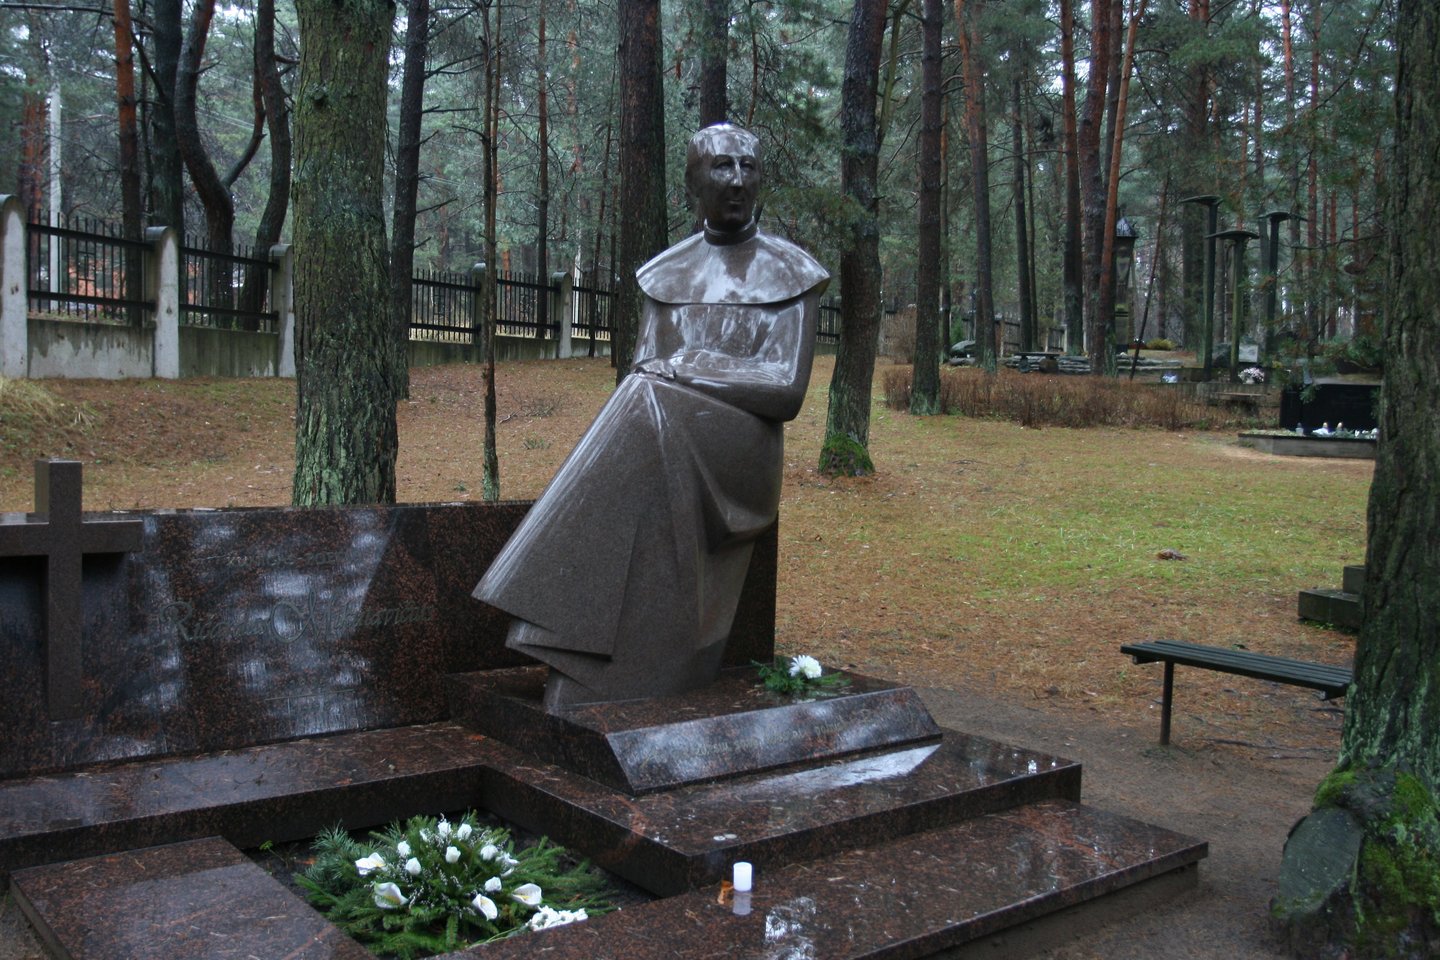 1999 m. Kauno Petrašiūnų kapinėse palaidotas 1998 liepos 1 d. nužudytas kunigas, kolekcininkas Ričardas Mikutavičius. Nužudyto kunigo palaikai buvo rasti tų pačių metų liepos 15 d., tačiau po trijų savaičių kaip neatpažinto skenduolio palaidoti Karmėlavoje. Tik paaiškėjus naujoms nusikaltimo aplinkybėms 1999 m. kovą ekshumuoti ir identifikuoti.<br>M.Patašiaus nuotr.